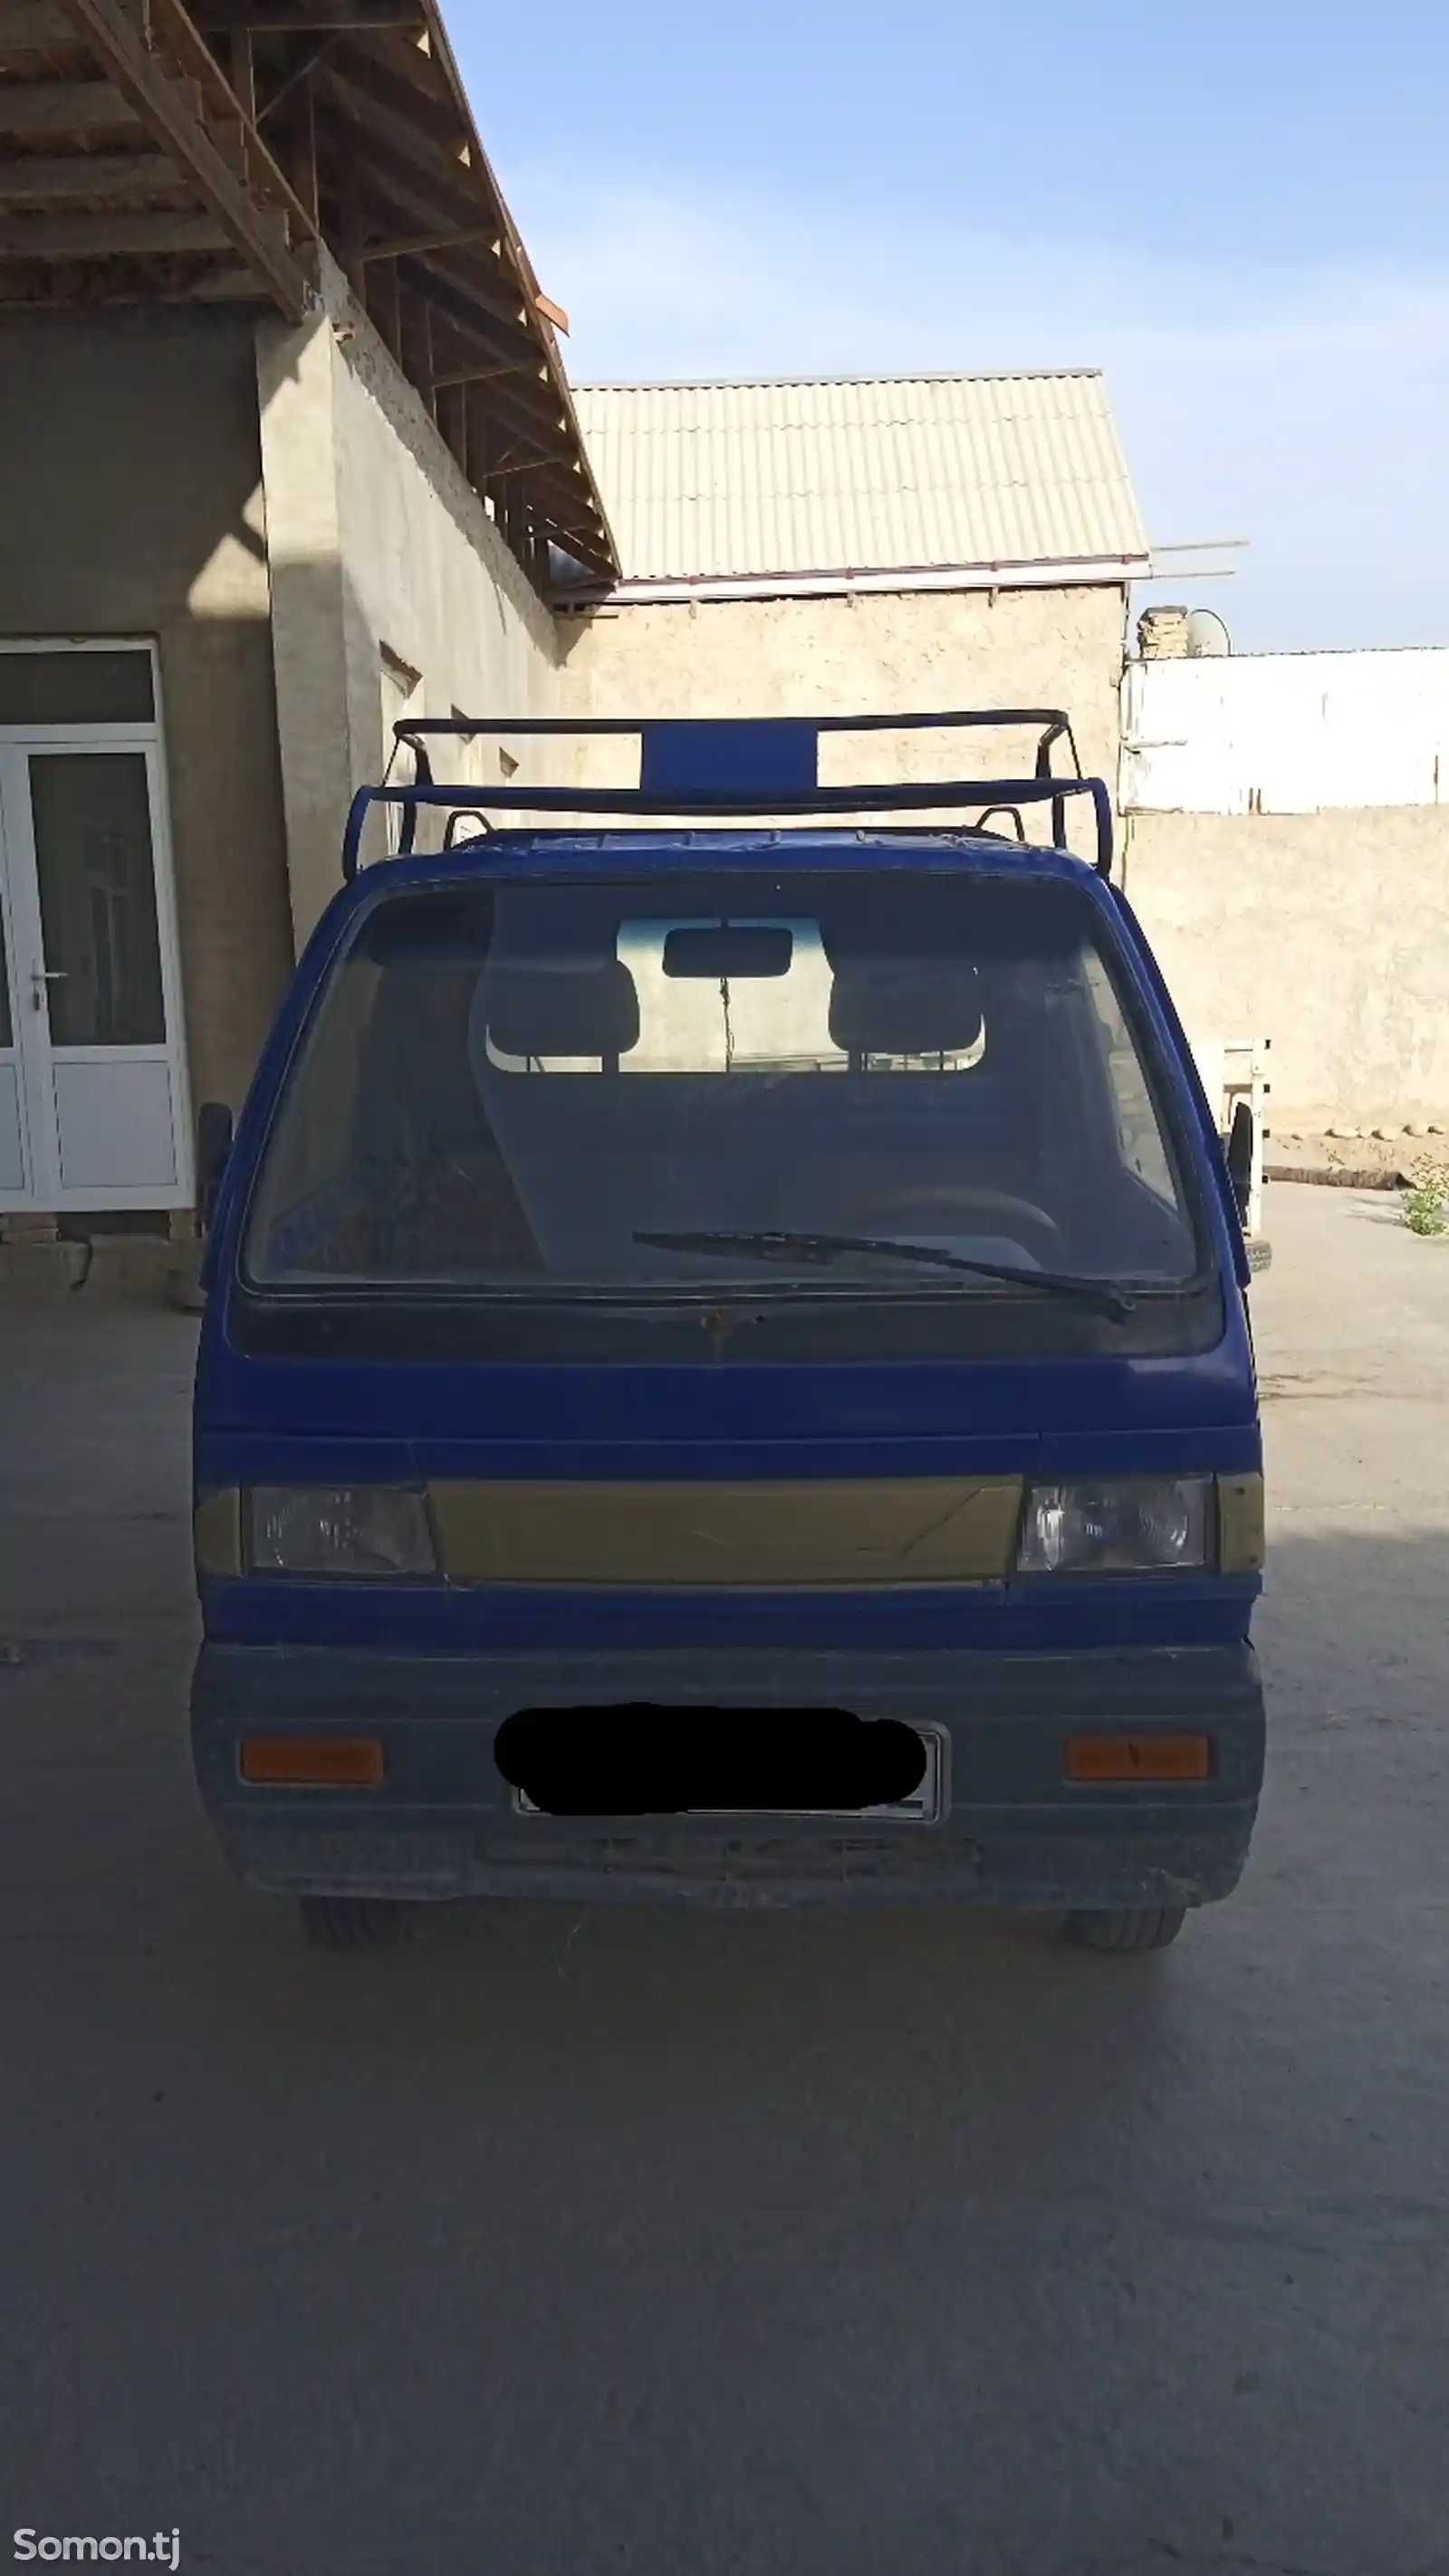 Бортовой автомобиль Daewoo Labo, 1999-2